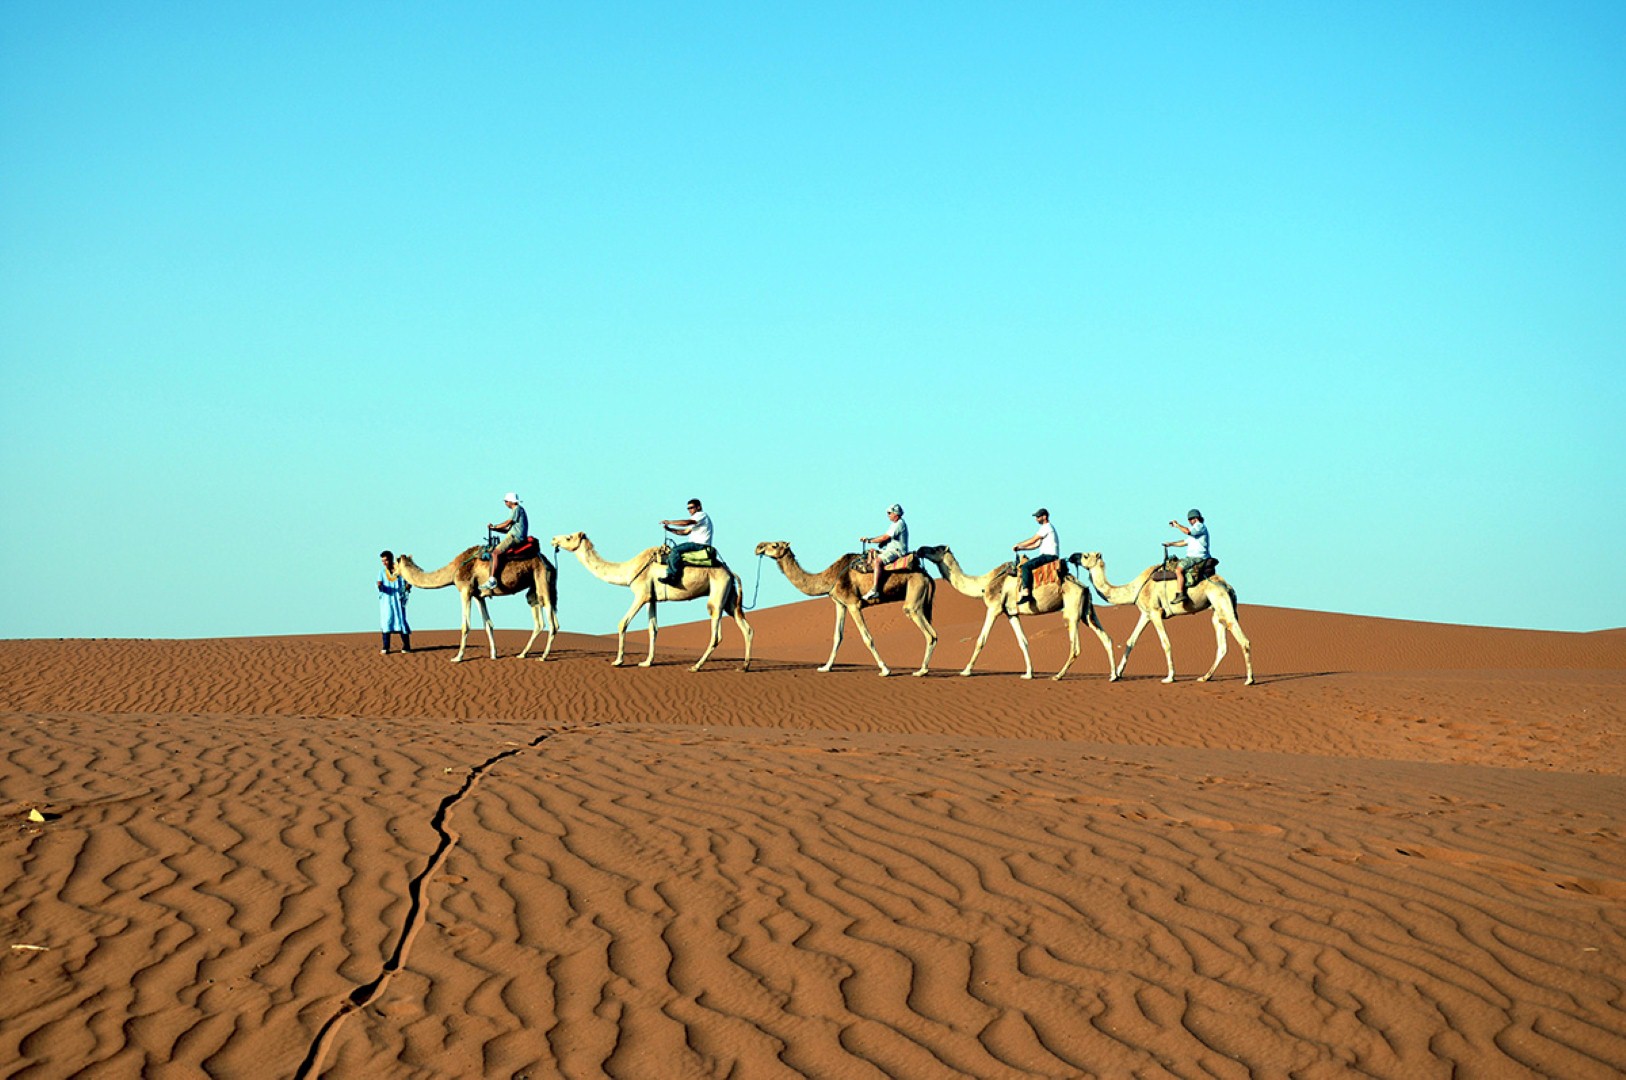 לטייל על גבי שיירות גמלים (צילום: דודו אדרי) (צילום: דודו אדרי)